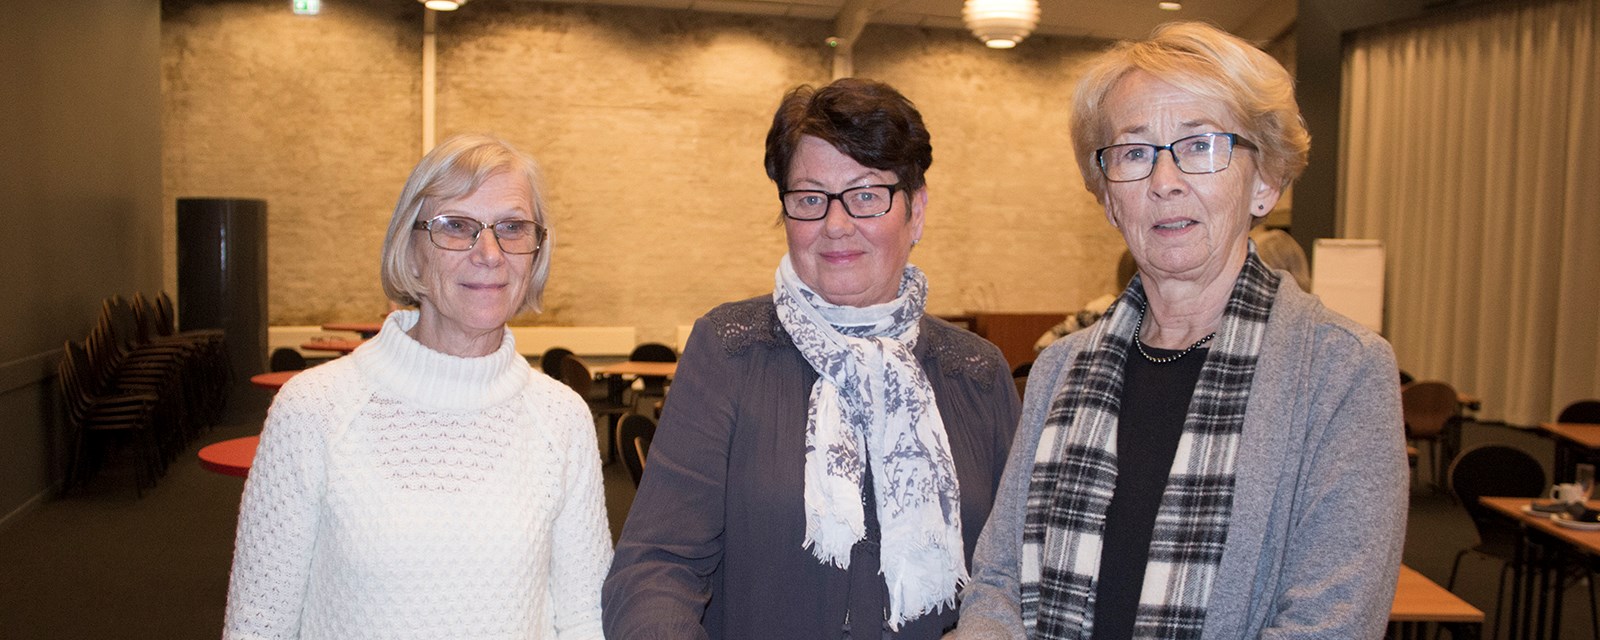 - Å være vitnestøtte kan absolutt anbefales mener disse tre kvinnene, som har mange års erfaring som vitnestøtter for Røde Kors. Karen Risom Olsen og Tove Bjerkli fra Elverum og Eva Eriksen fra Fredrikstad.